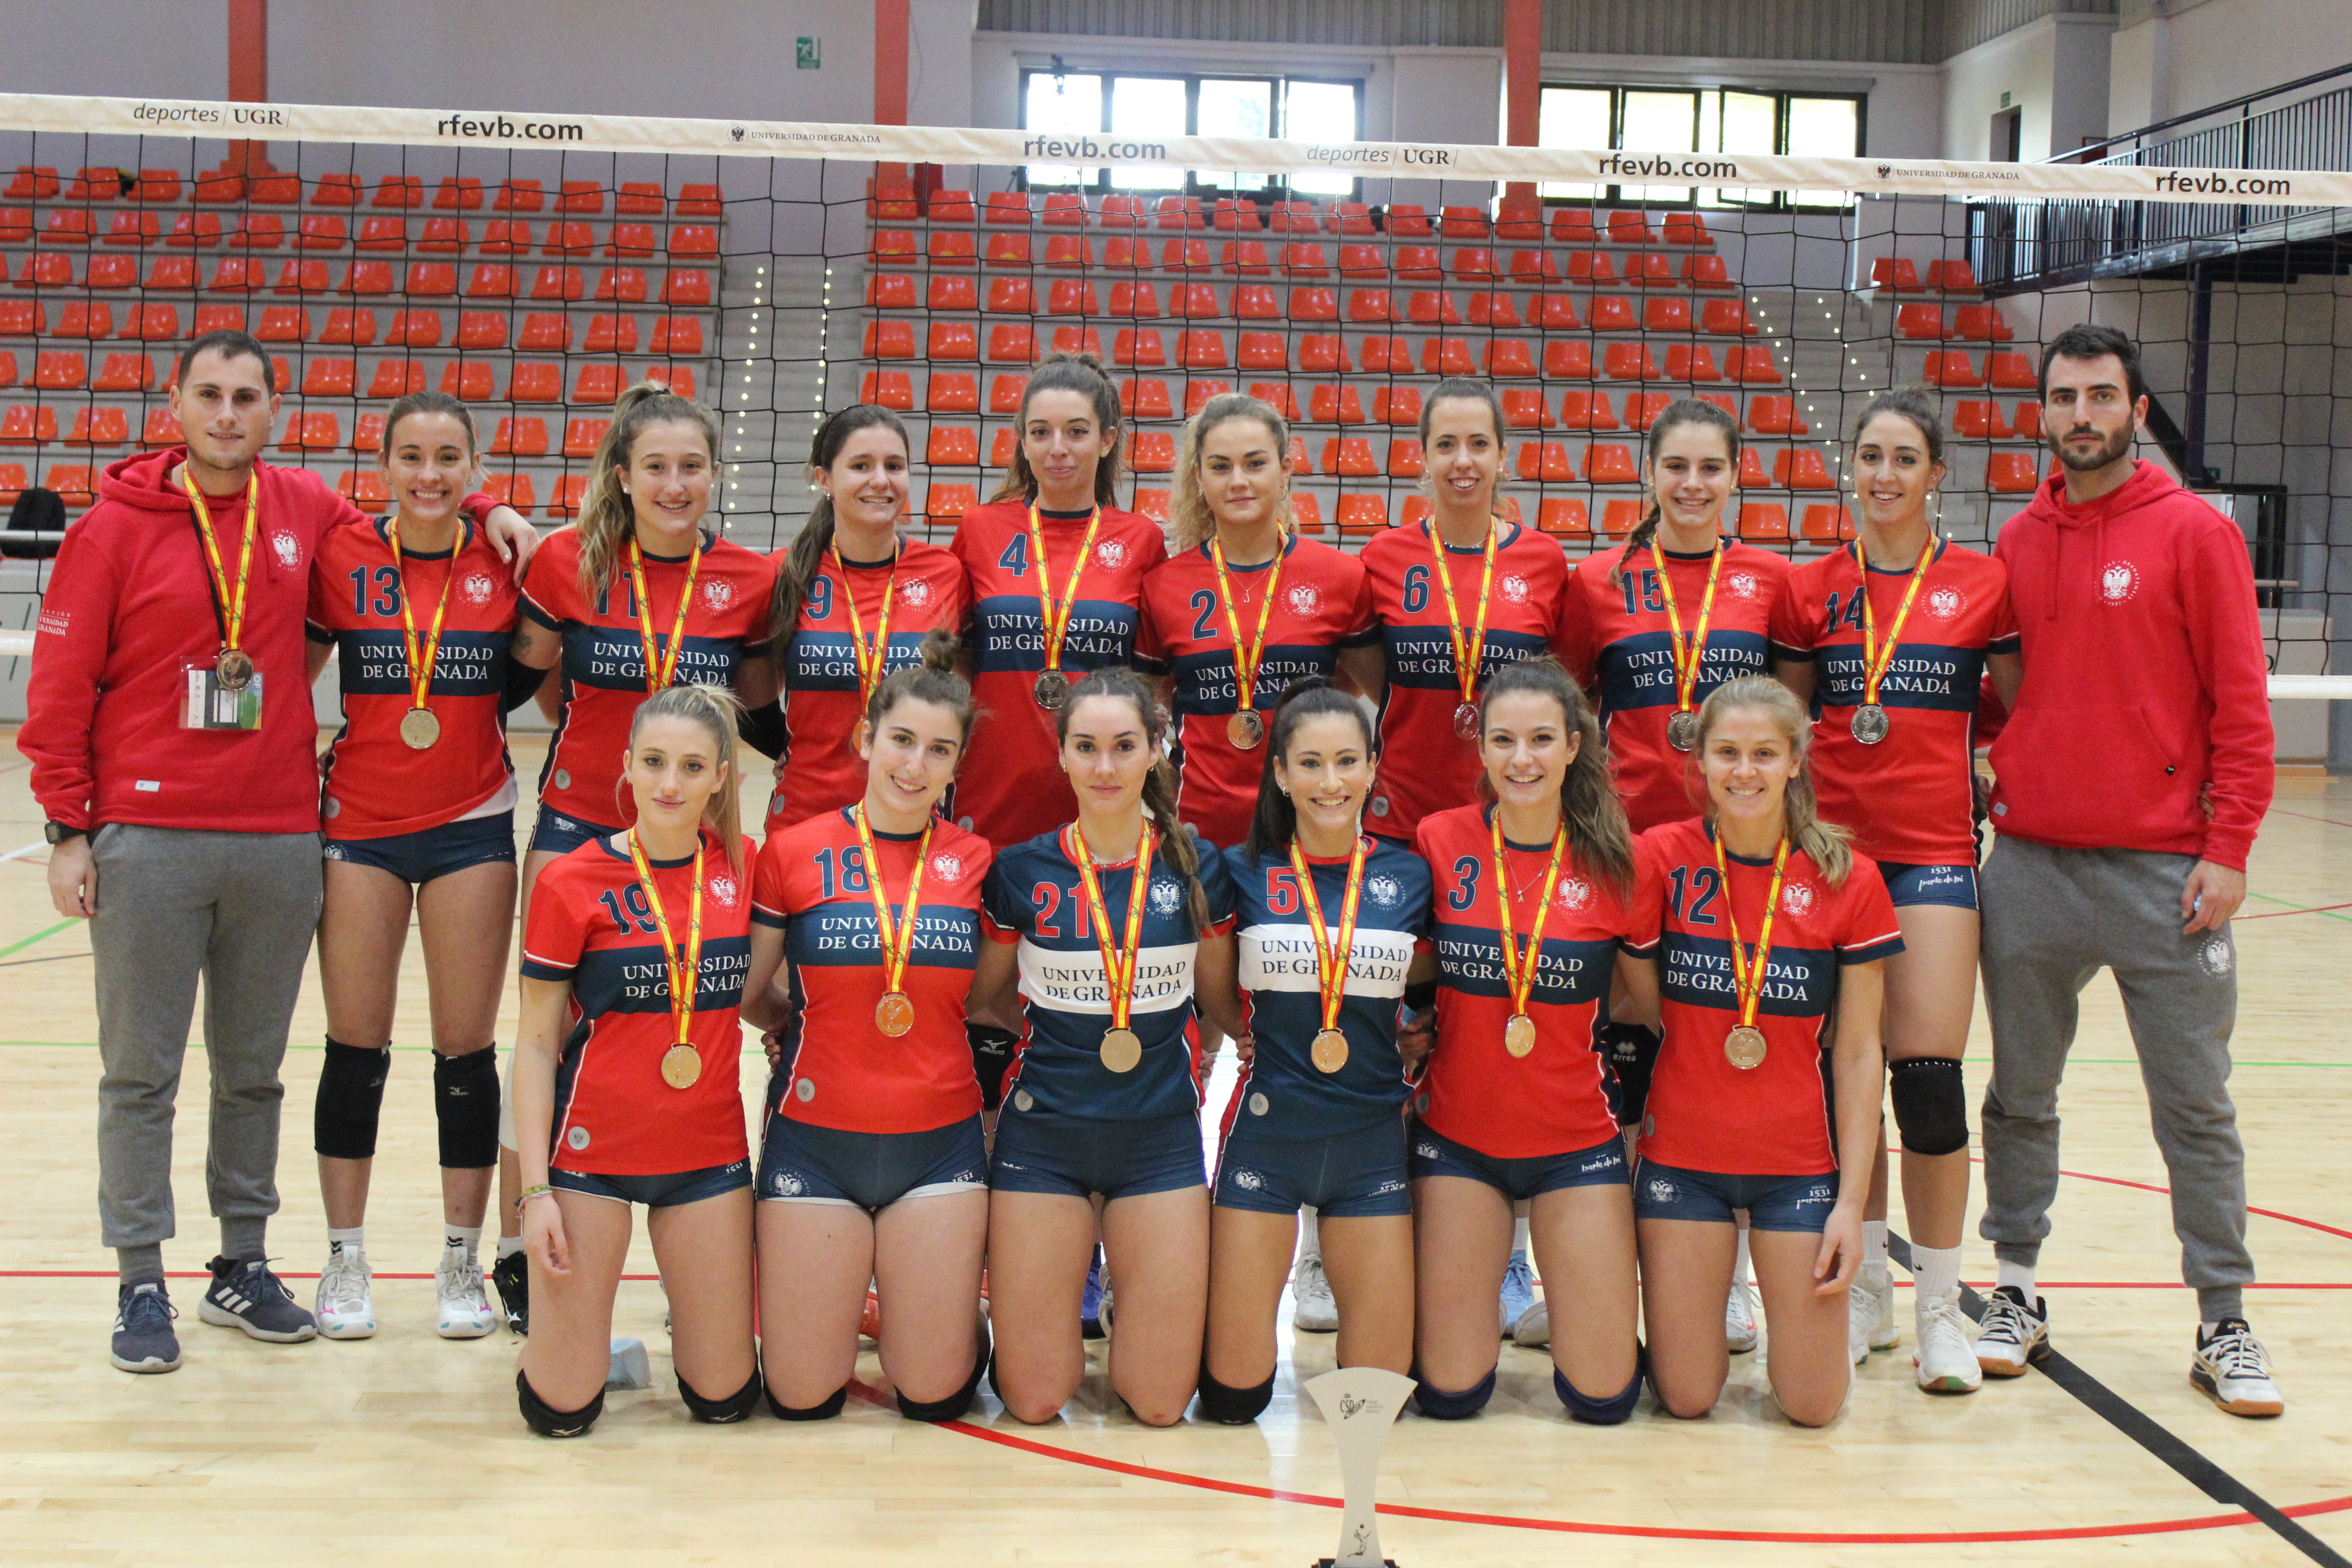 La Universidad de Granada se proclama subcampeona de España universitaria de voleibol femenino 2021